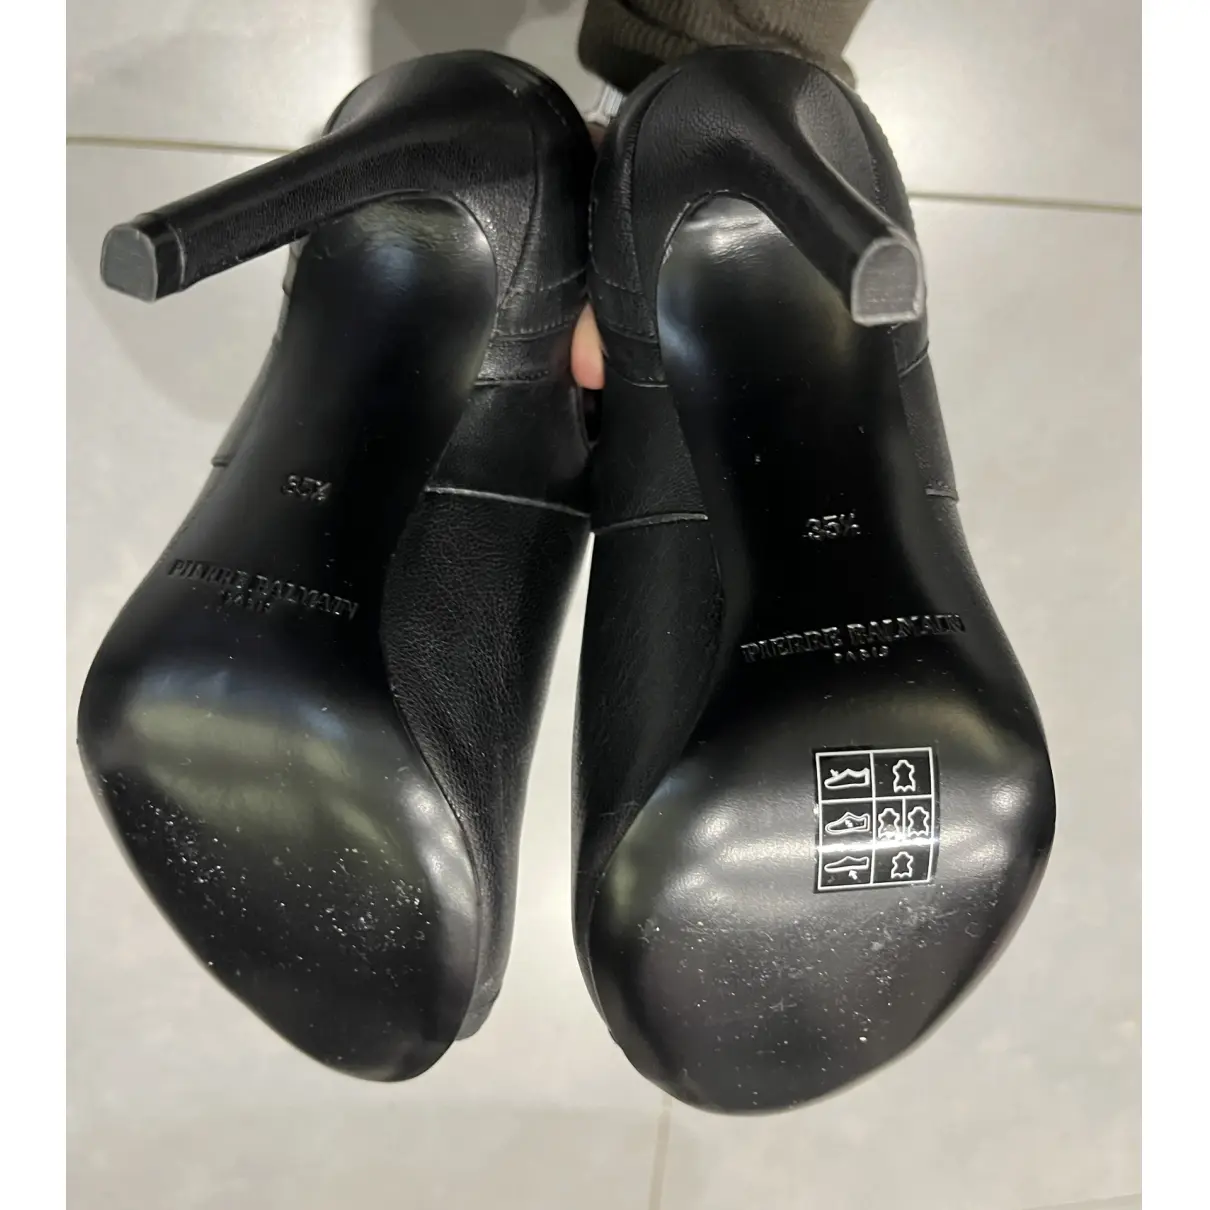 Leather sandals Pierre Balmain - Vintage